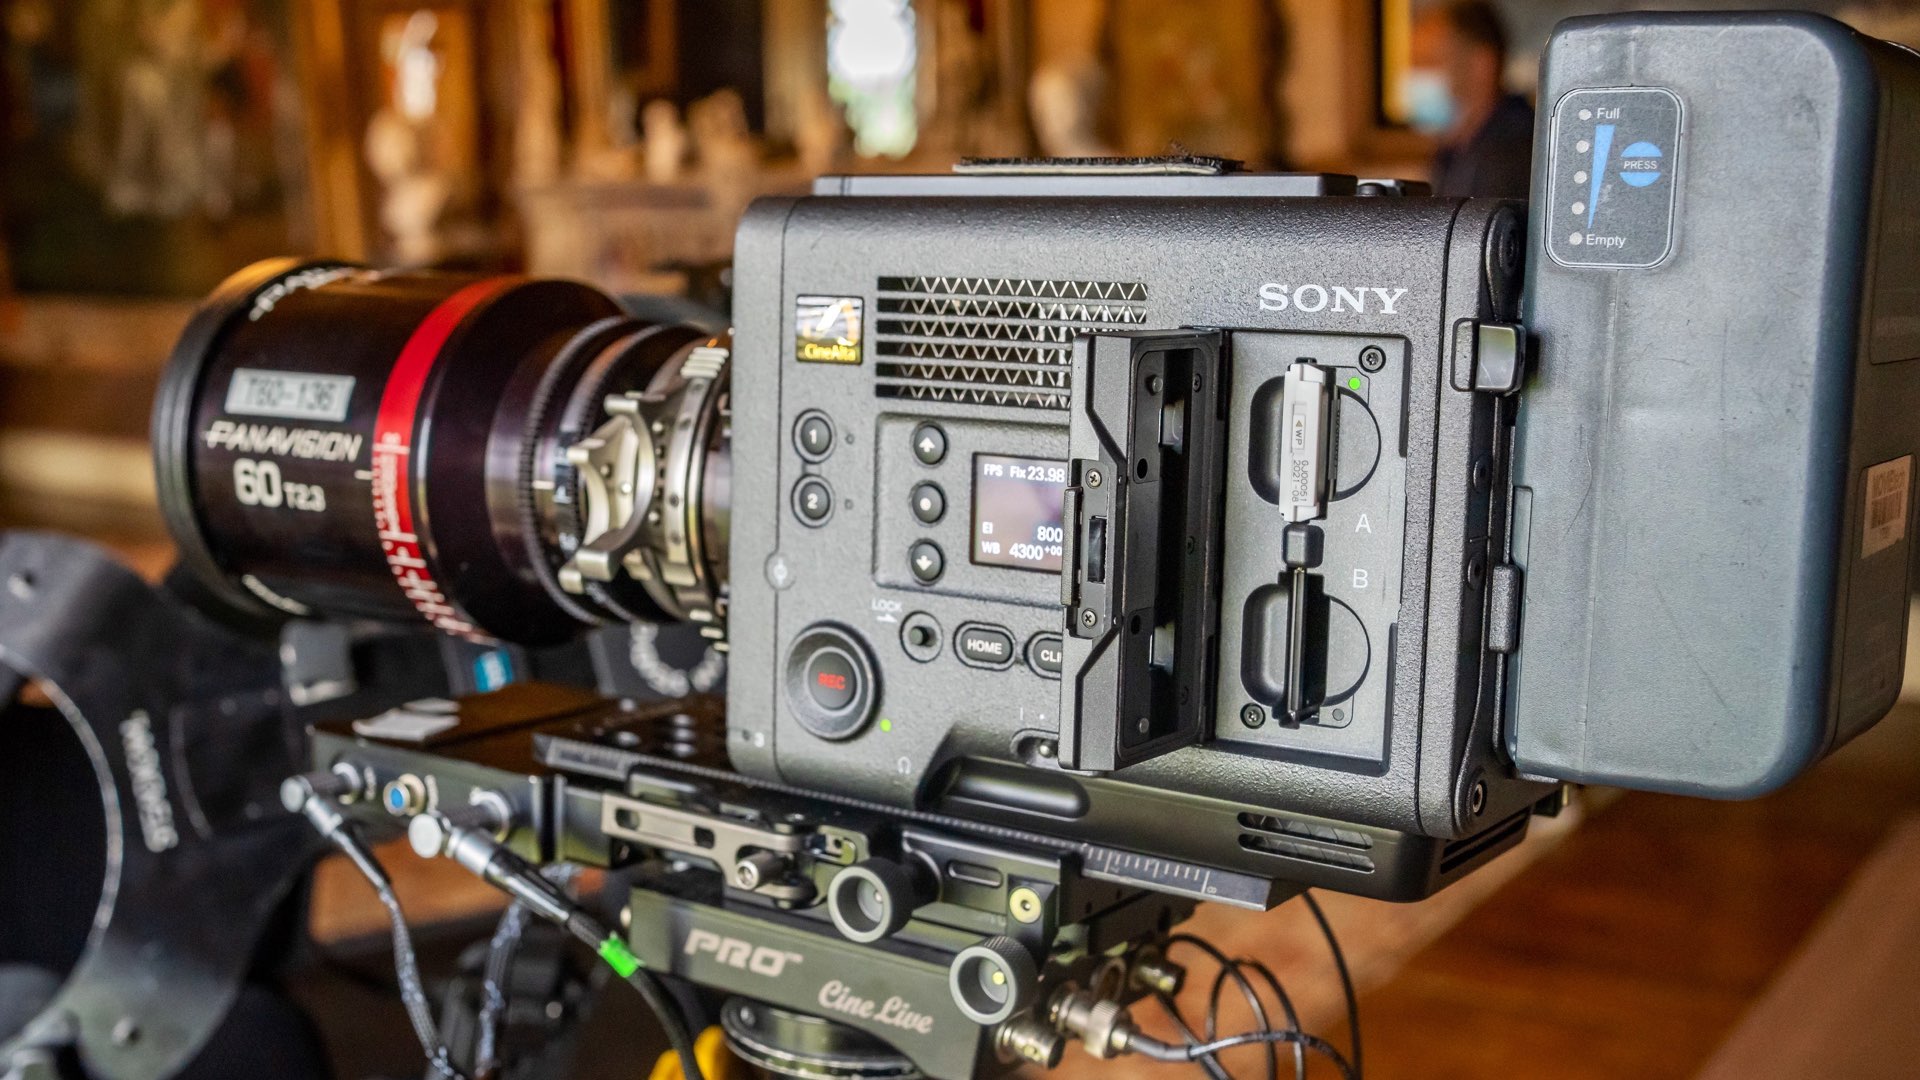 Sony giới thiệu máy quay Venice 2, máy quay cinema full-frame với khả năng quay 8.6K